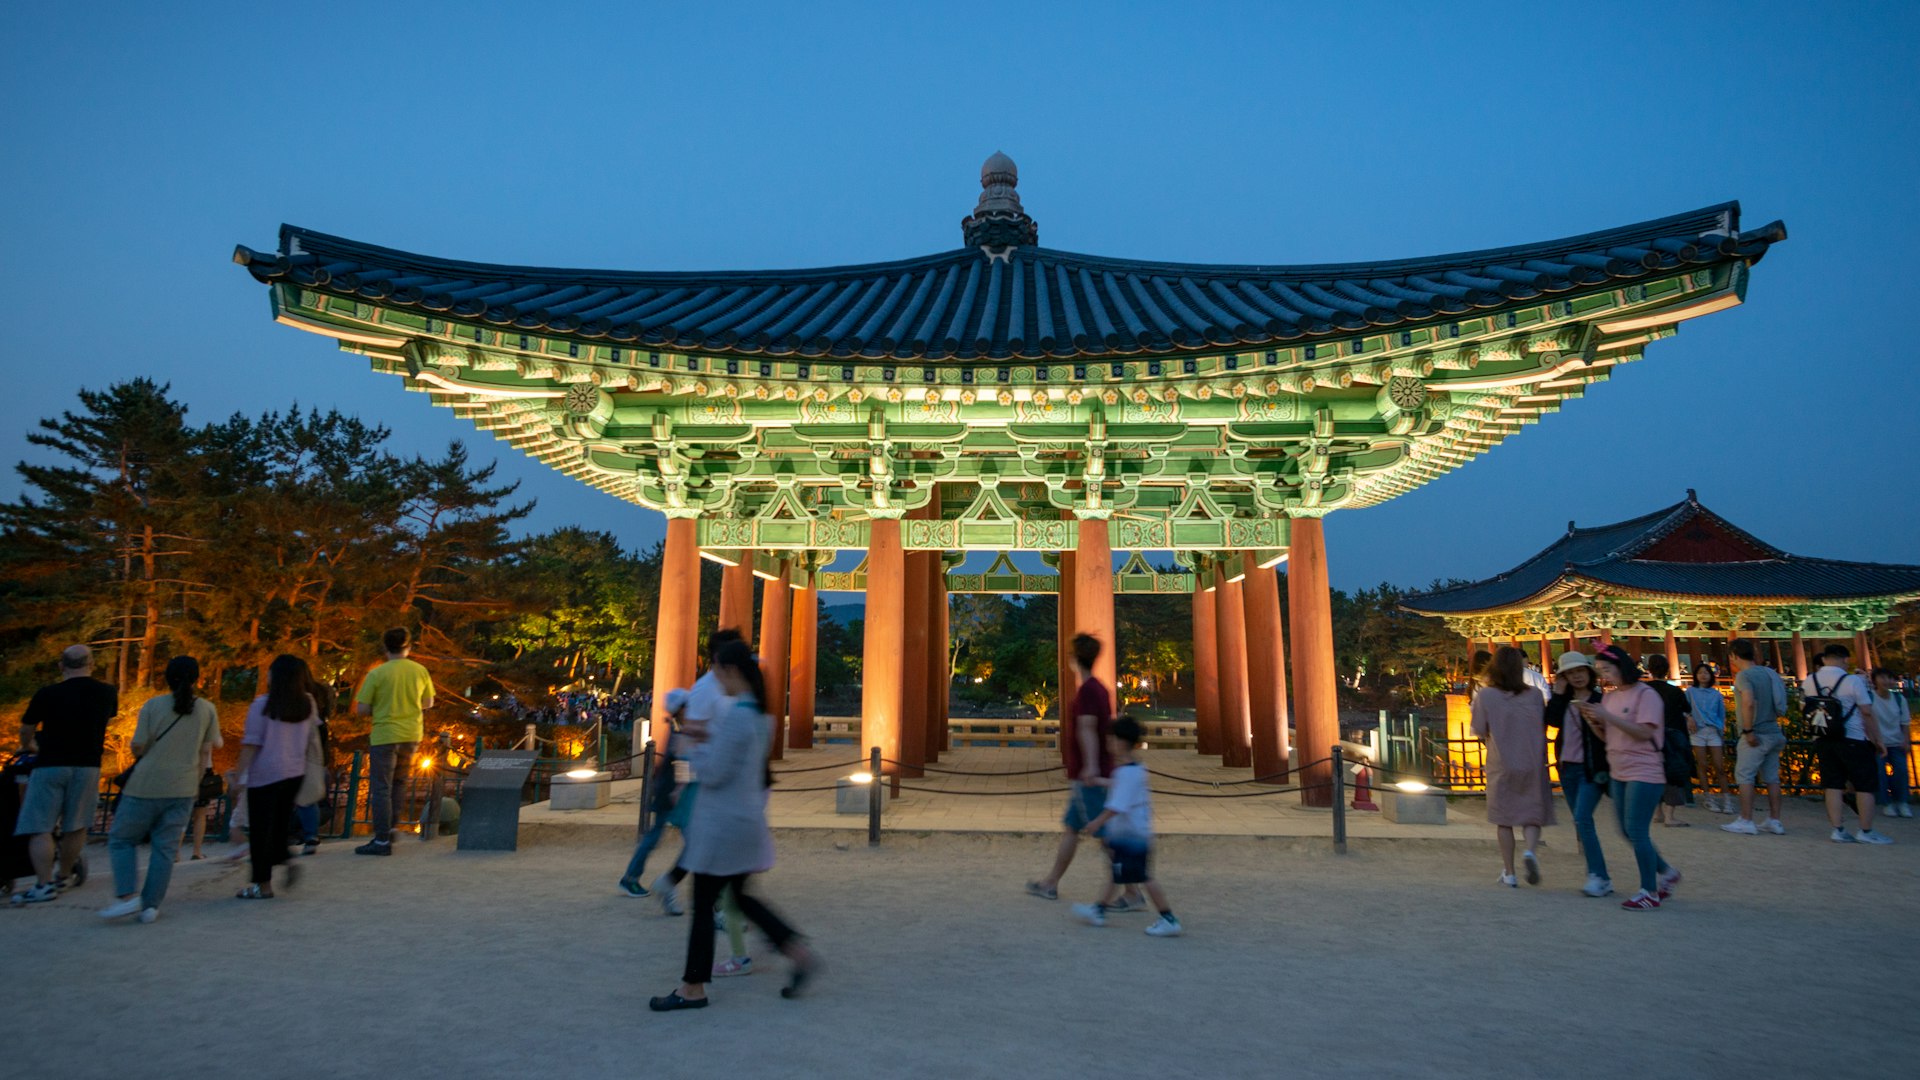 Visitors pass through the pavilions at the Donggung Palace, Gyeongju